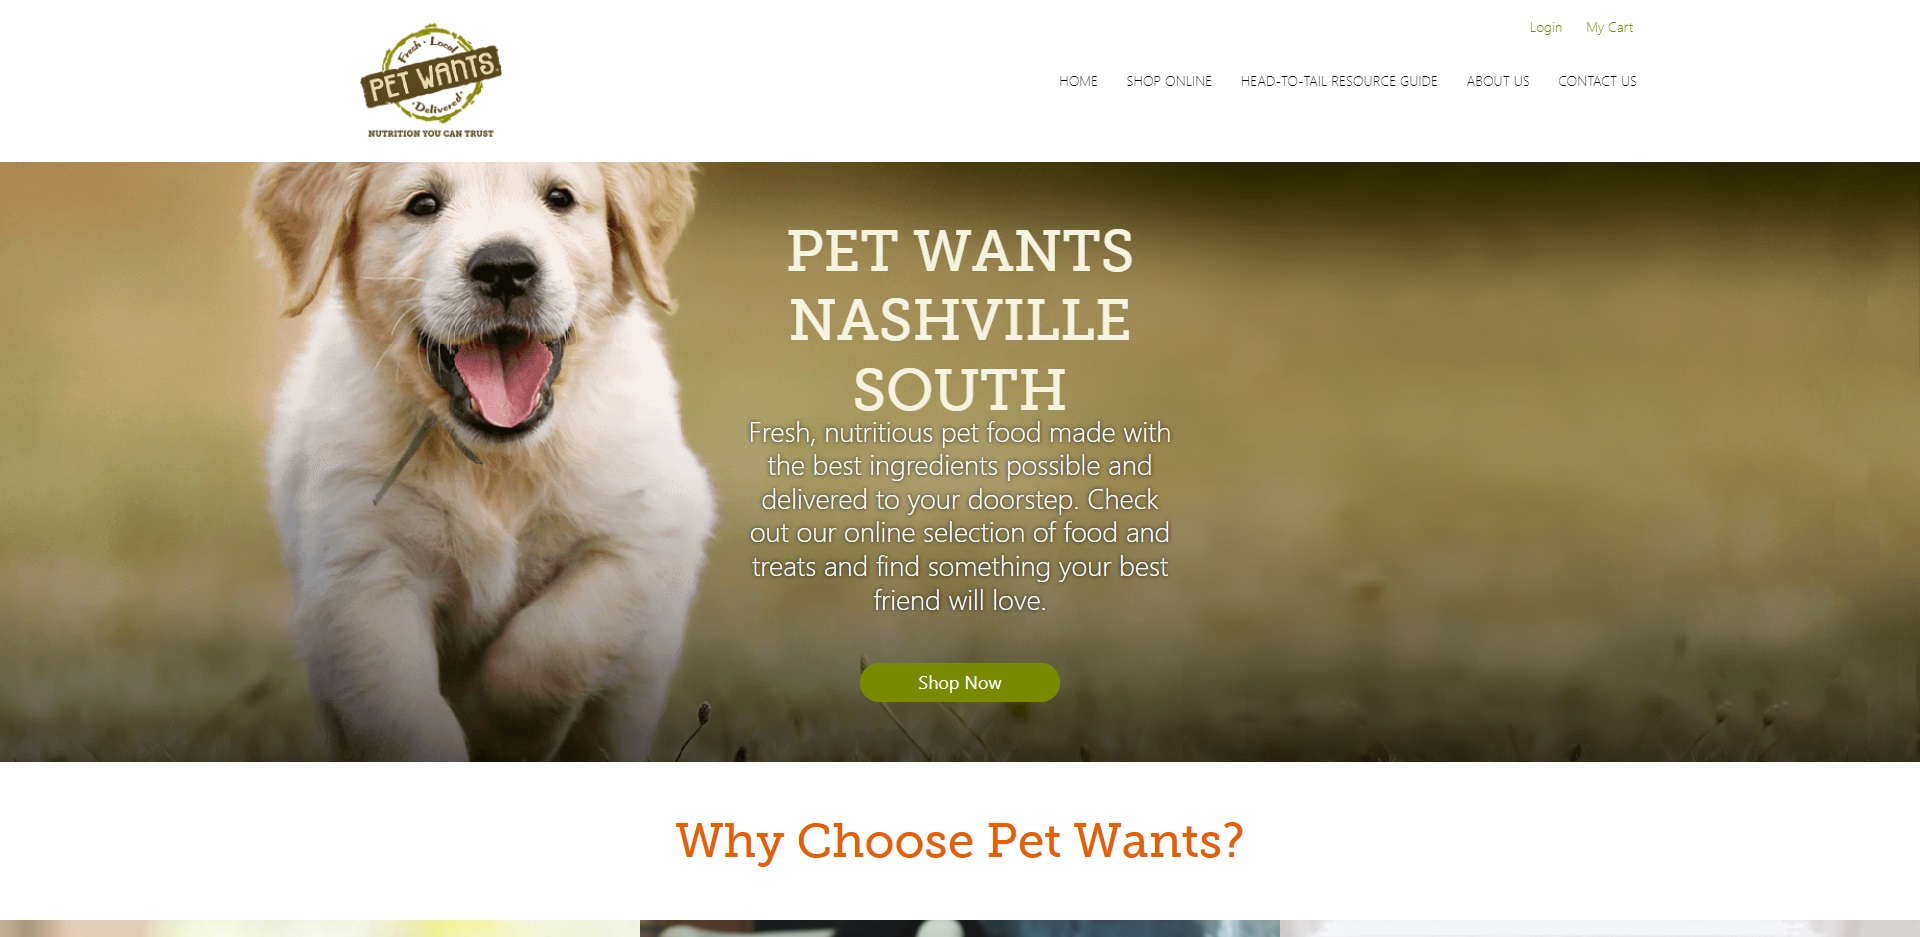 Nashville, TN's Best Pet Shops